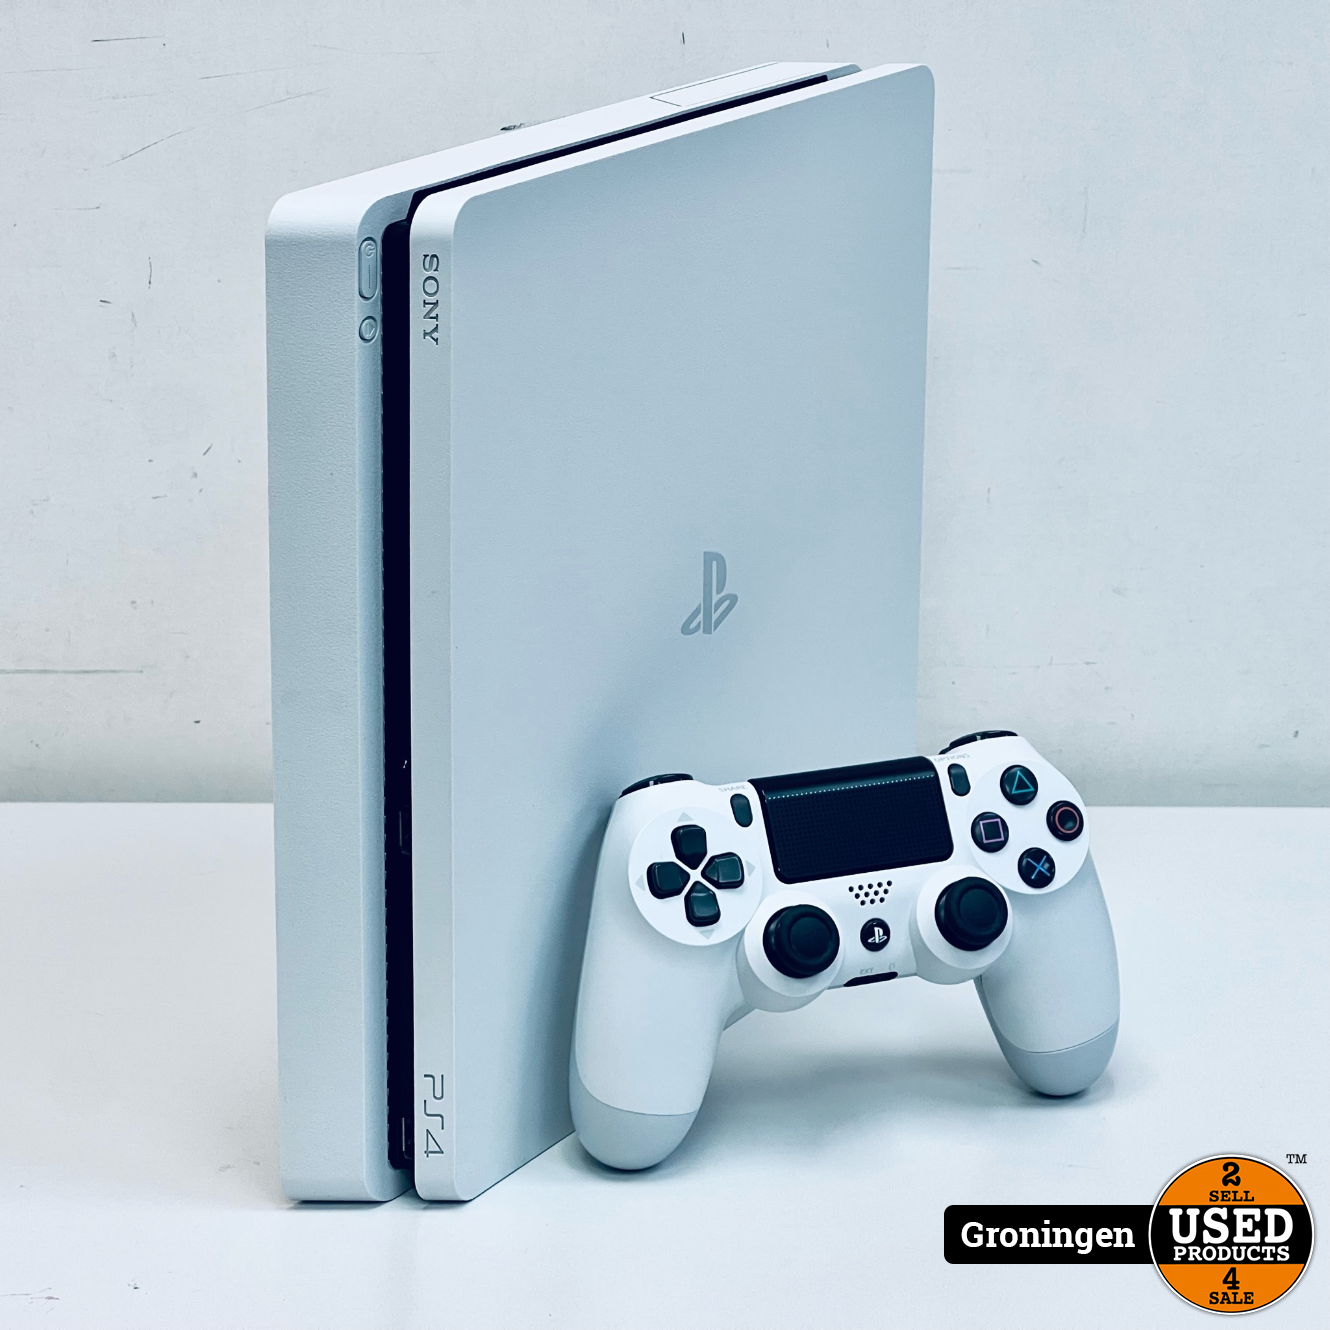 Stadion klippe Charmerende 10%][PS4] Sony PlayStation 4 Slim 500GB Glacier White | incl. Sony  DualShock 4 Controller V2 en kabels - Used Products Groningen